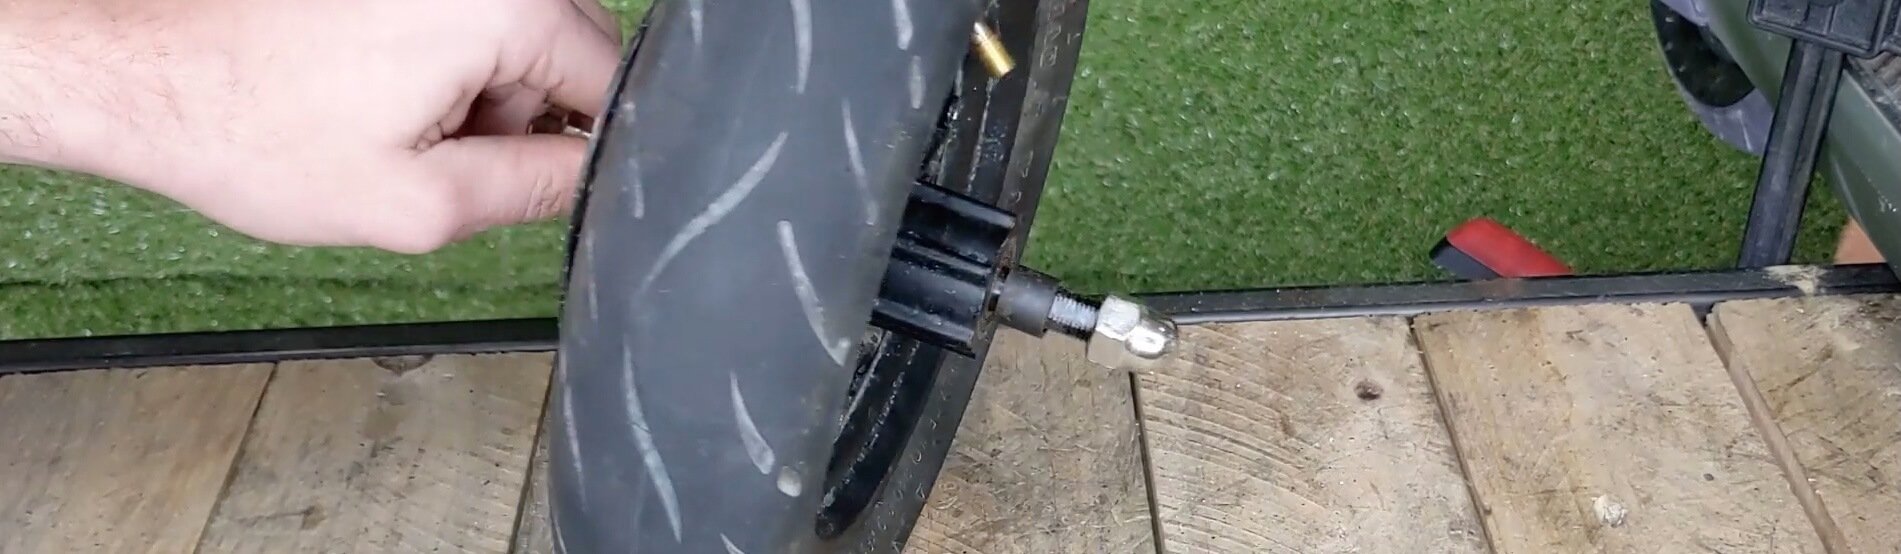 Installation de la roue avant réparée sur la fourche